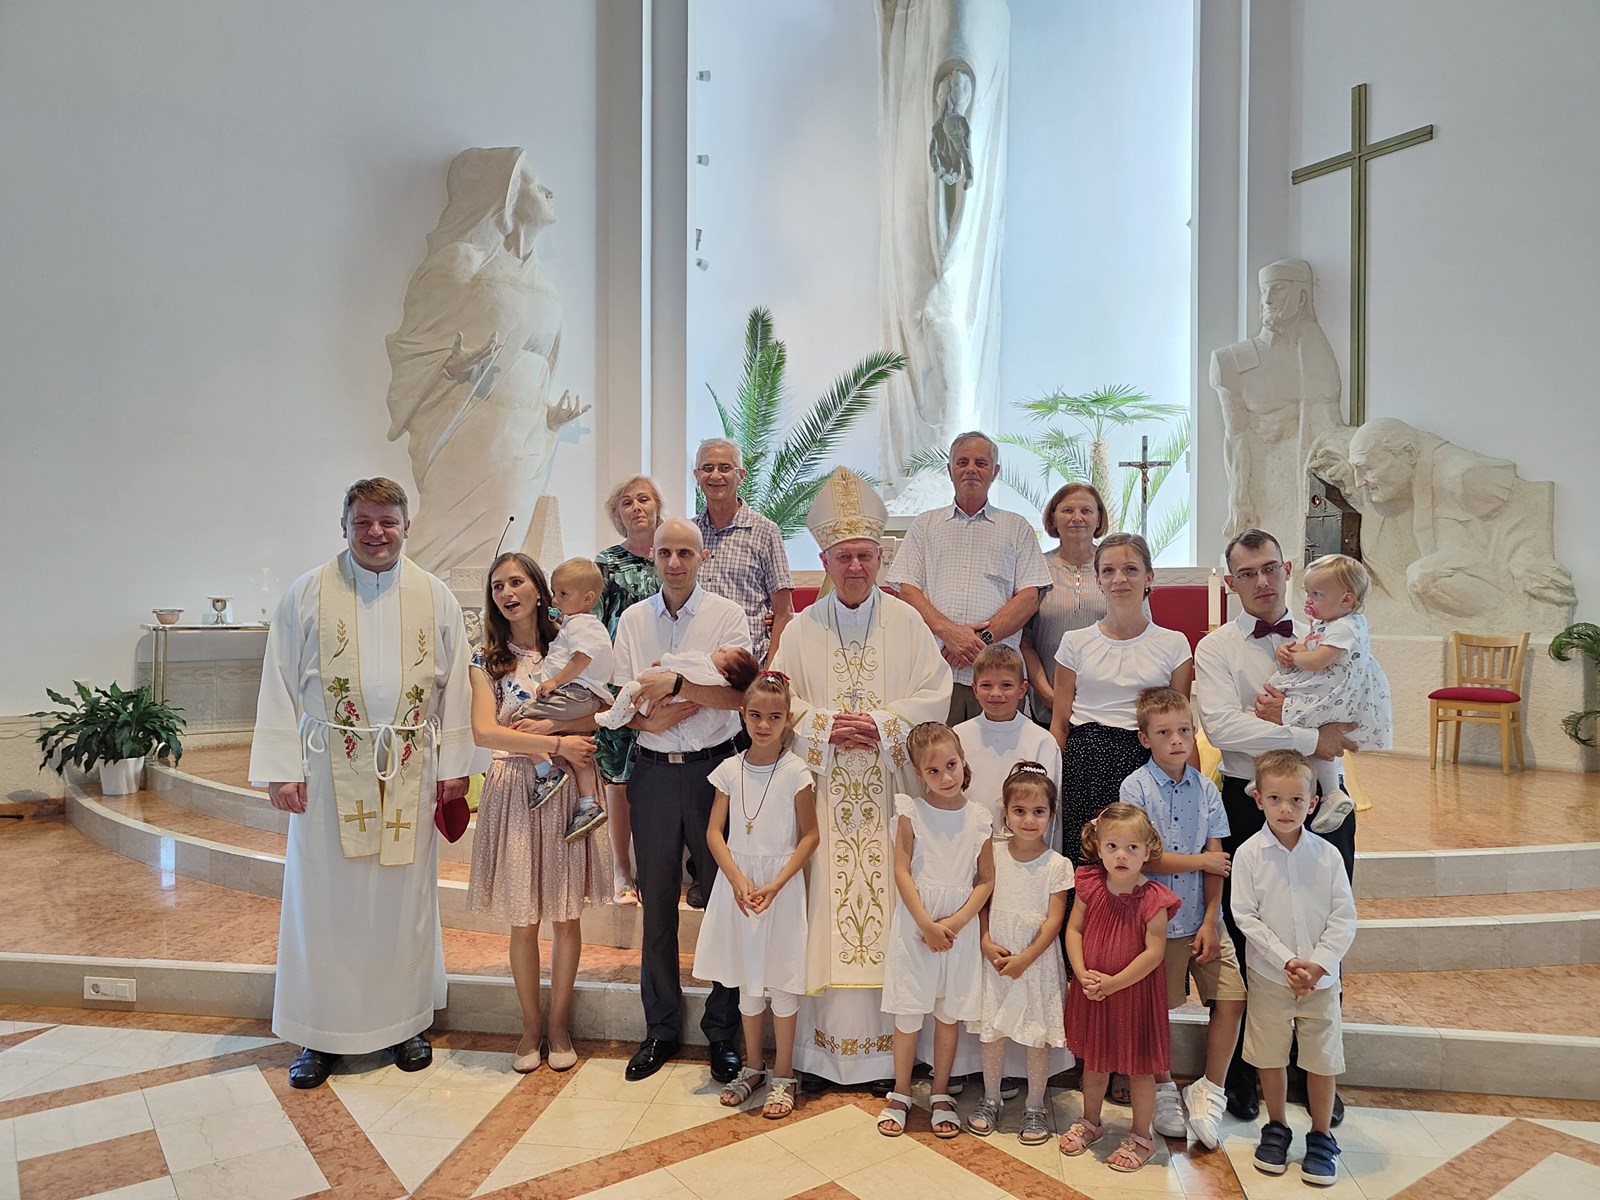 Radost slavlja sakramenta krštenja 6. djeteta u obitelji Markić